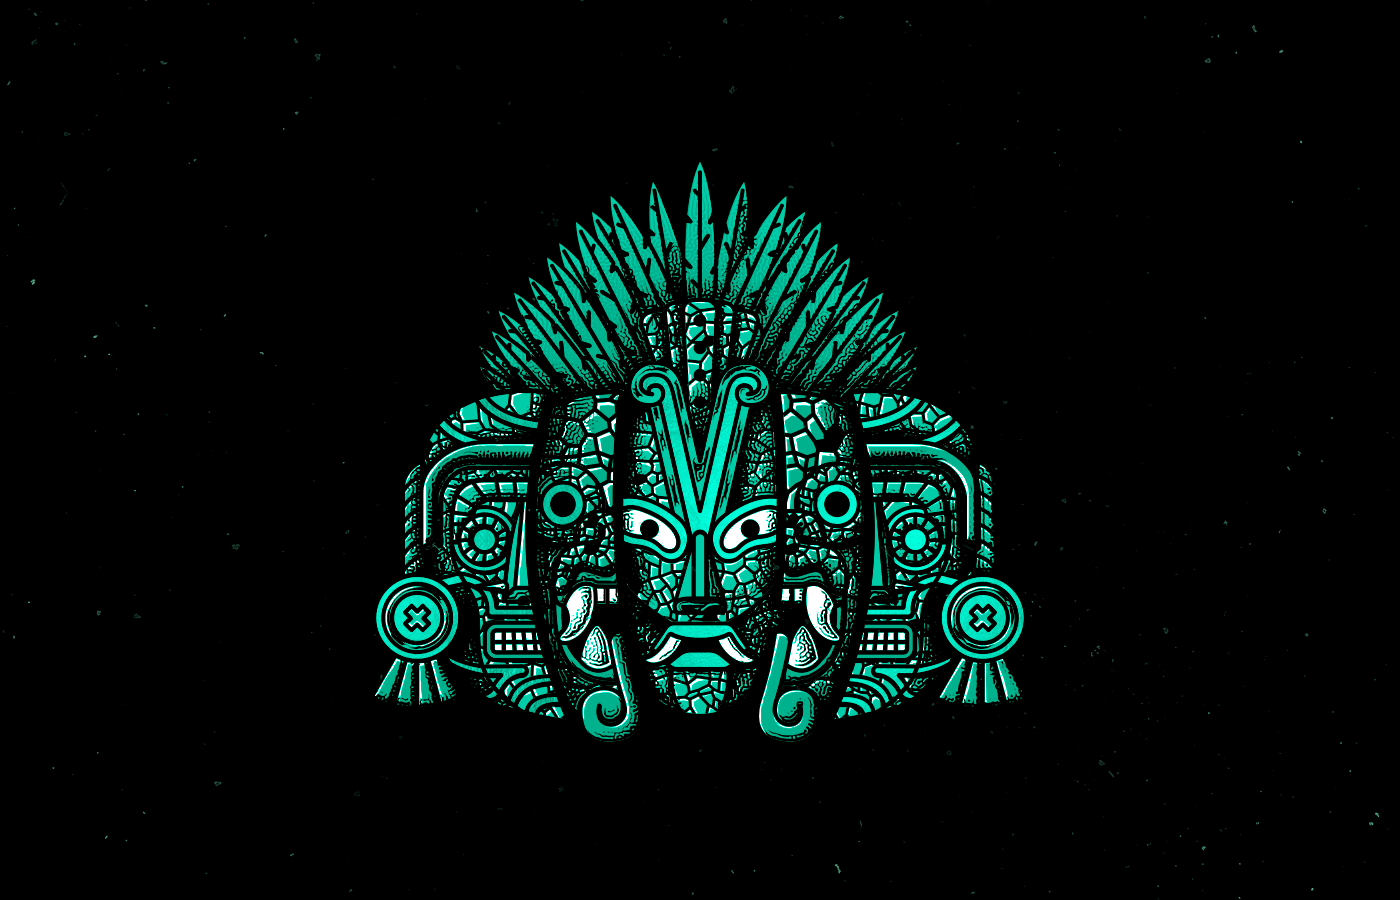 skateboarding skateboard mexico prehispanic aztec Azteca